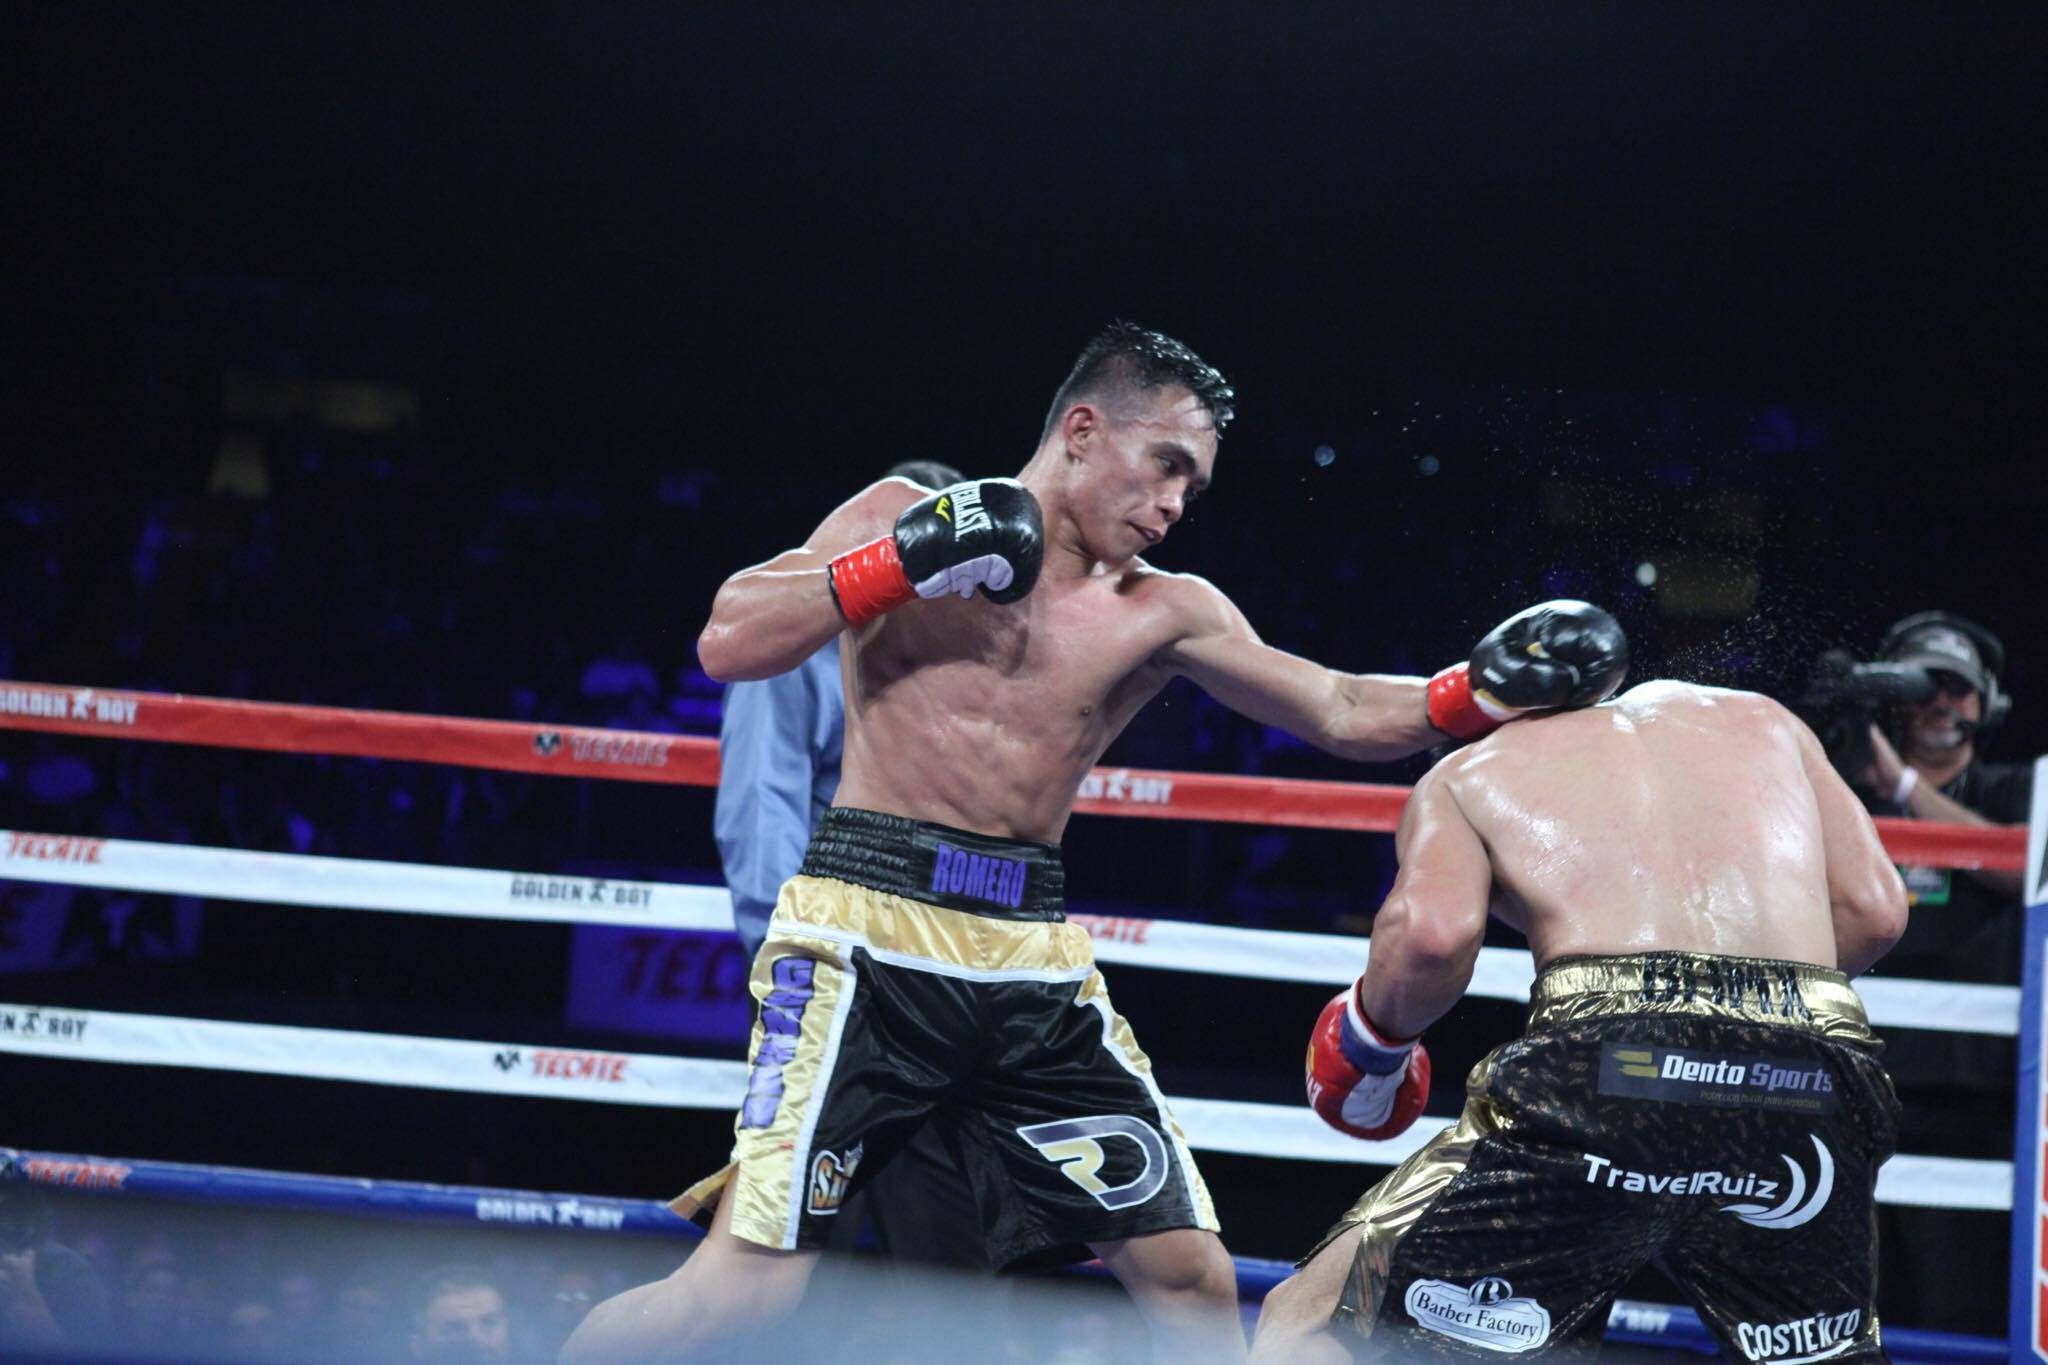 Filipino boxer Romero Duno defeats crafty Juan Sanchez by decision in LA